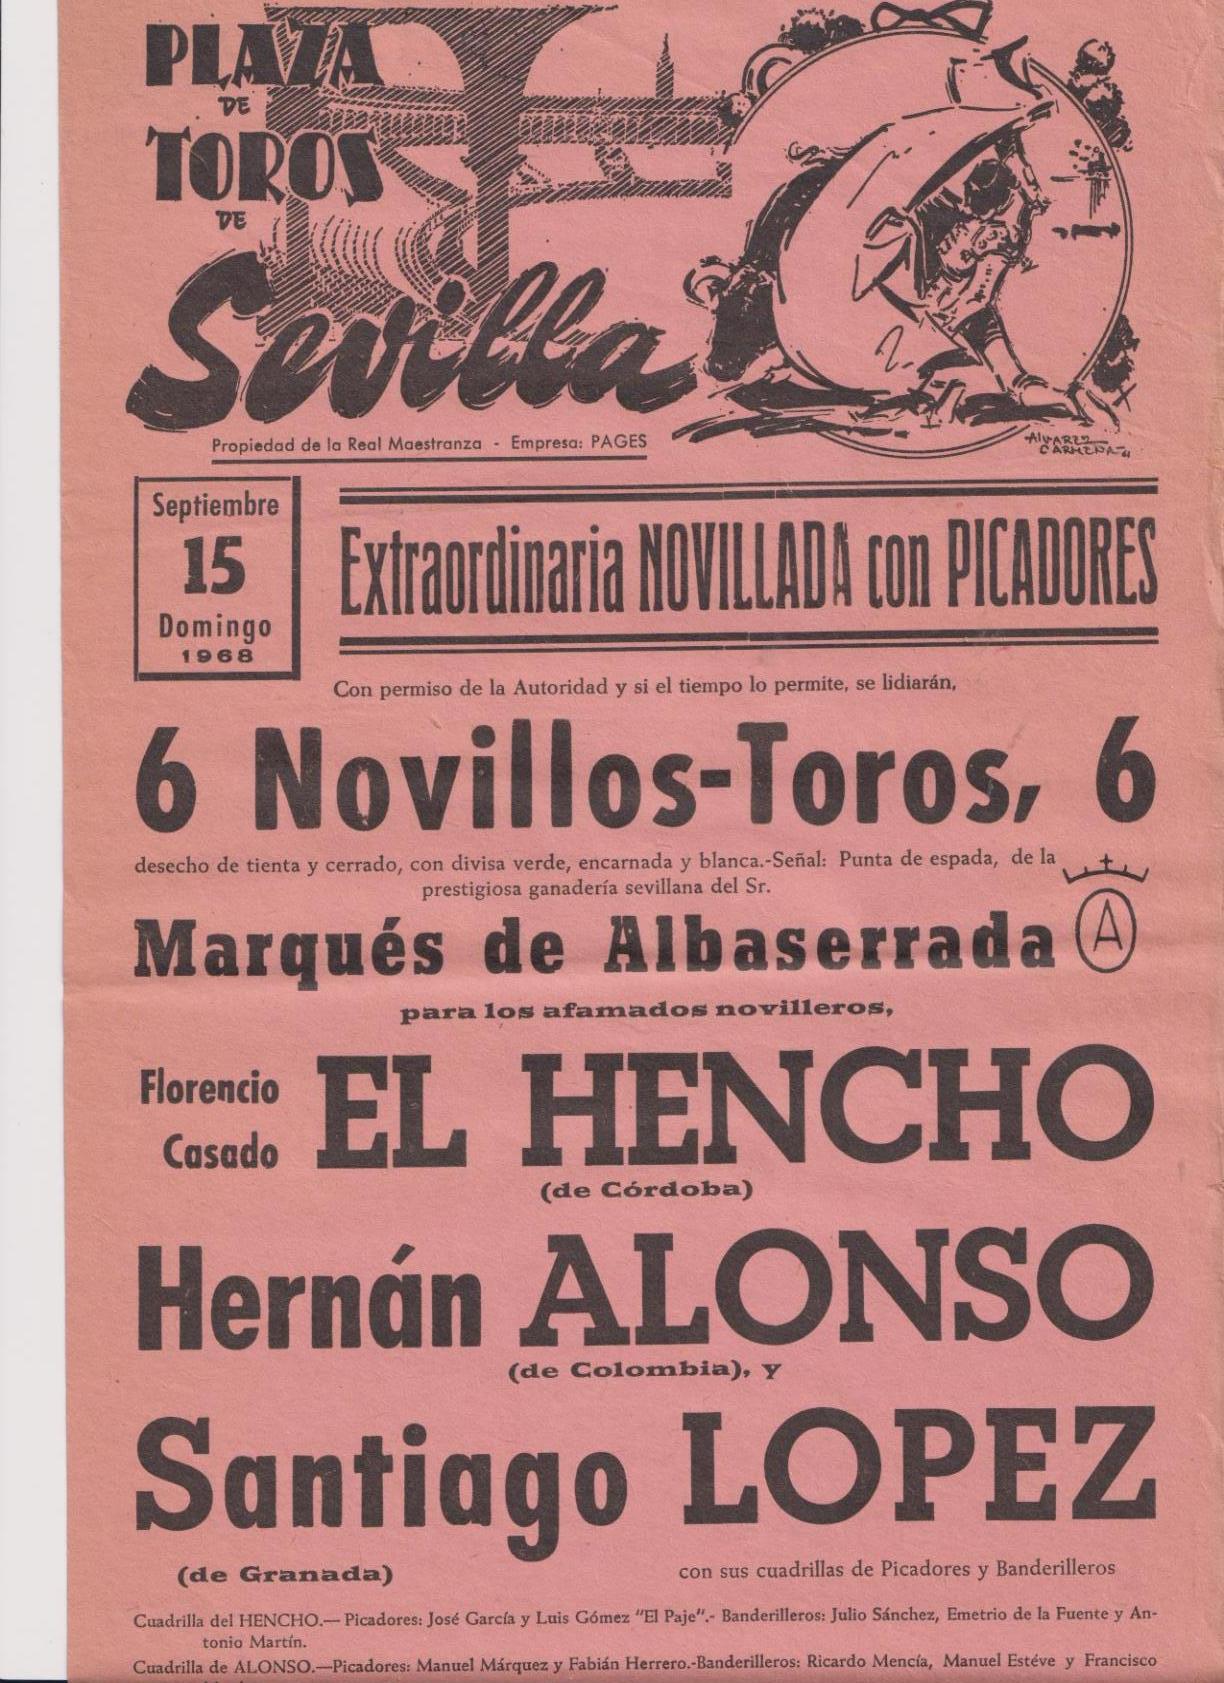 Cartel de Toros (45x21) Plaza de Toros de Sevilla 15 de Septiembre de 1968. Extraordinaria Novillada con Picadores